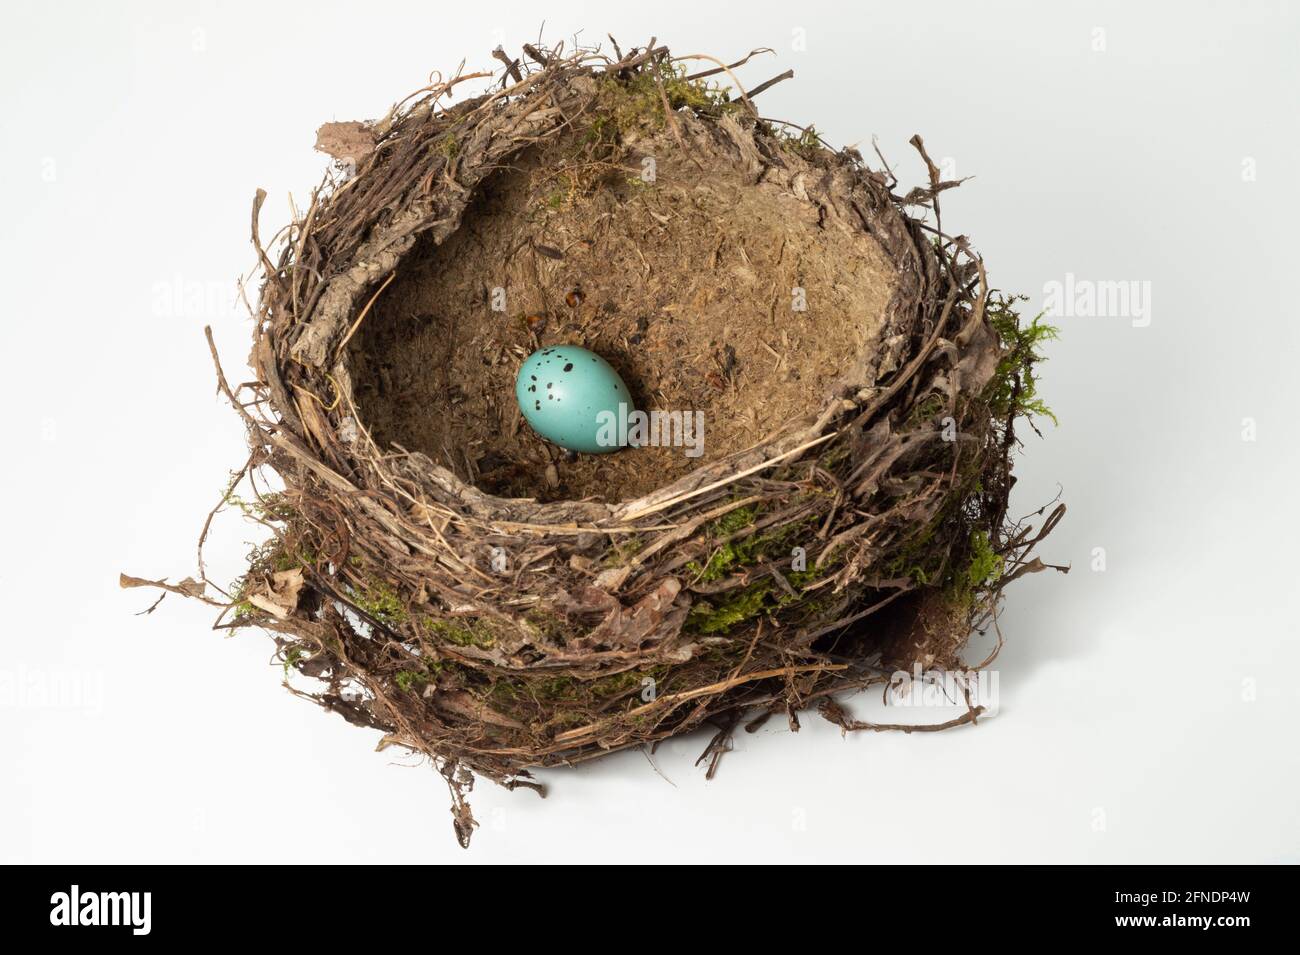 Canzone Thrush nido e uovo singolo, Turdus philomelos, nido isolato su sfondo bianco, Londra, Regno Unito Foto Stock